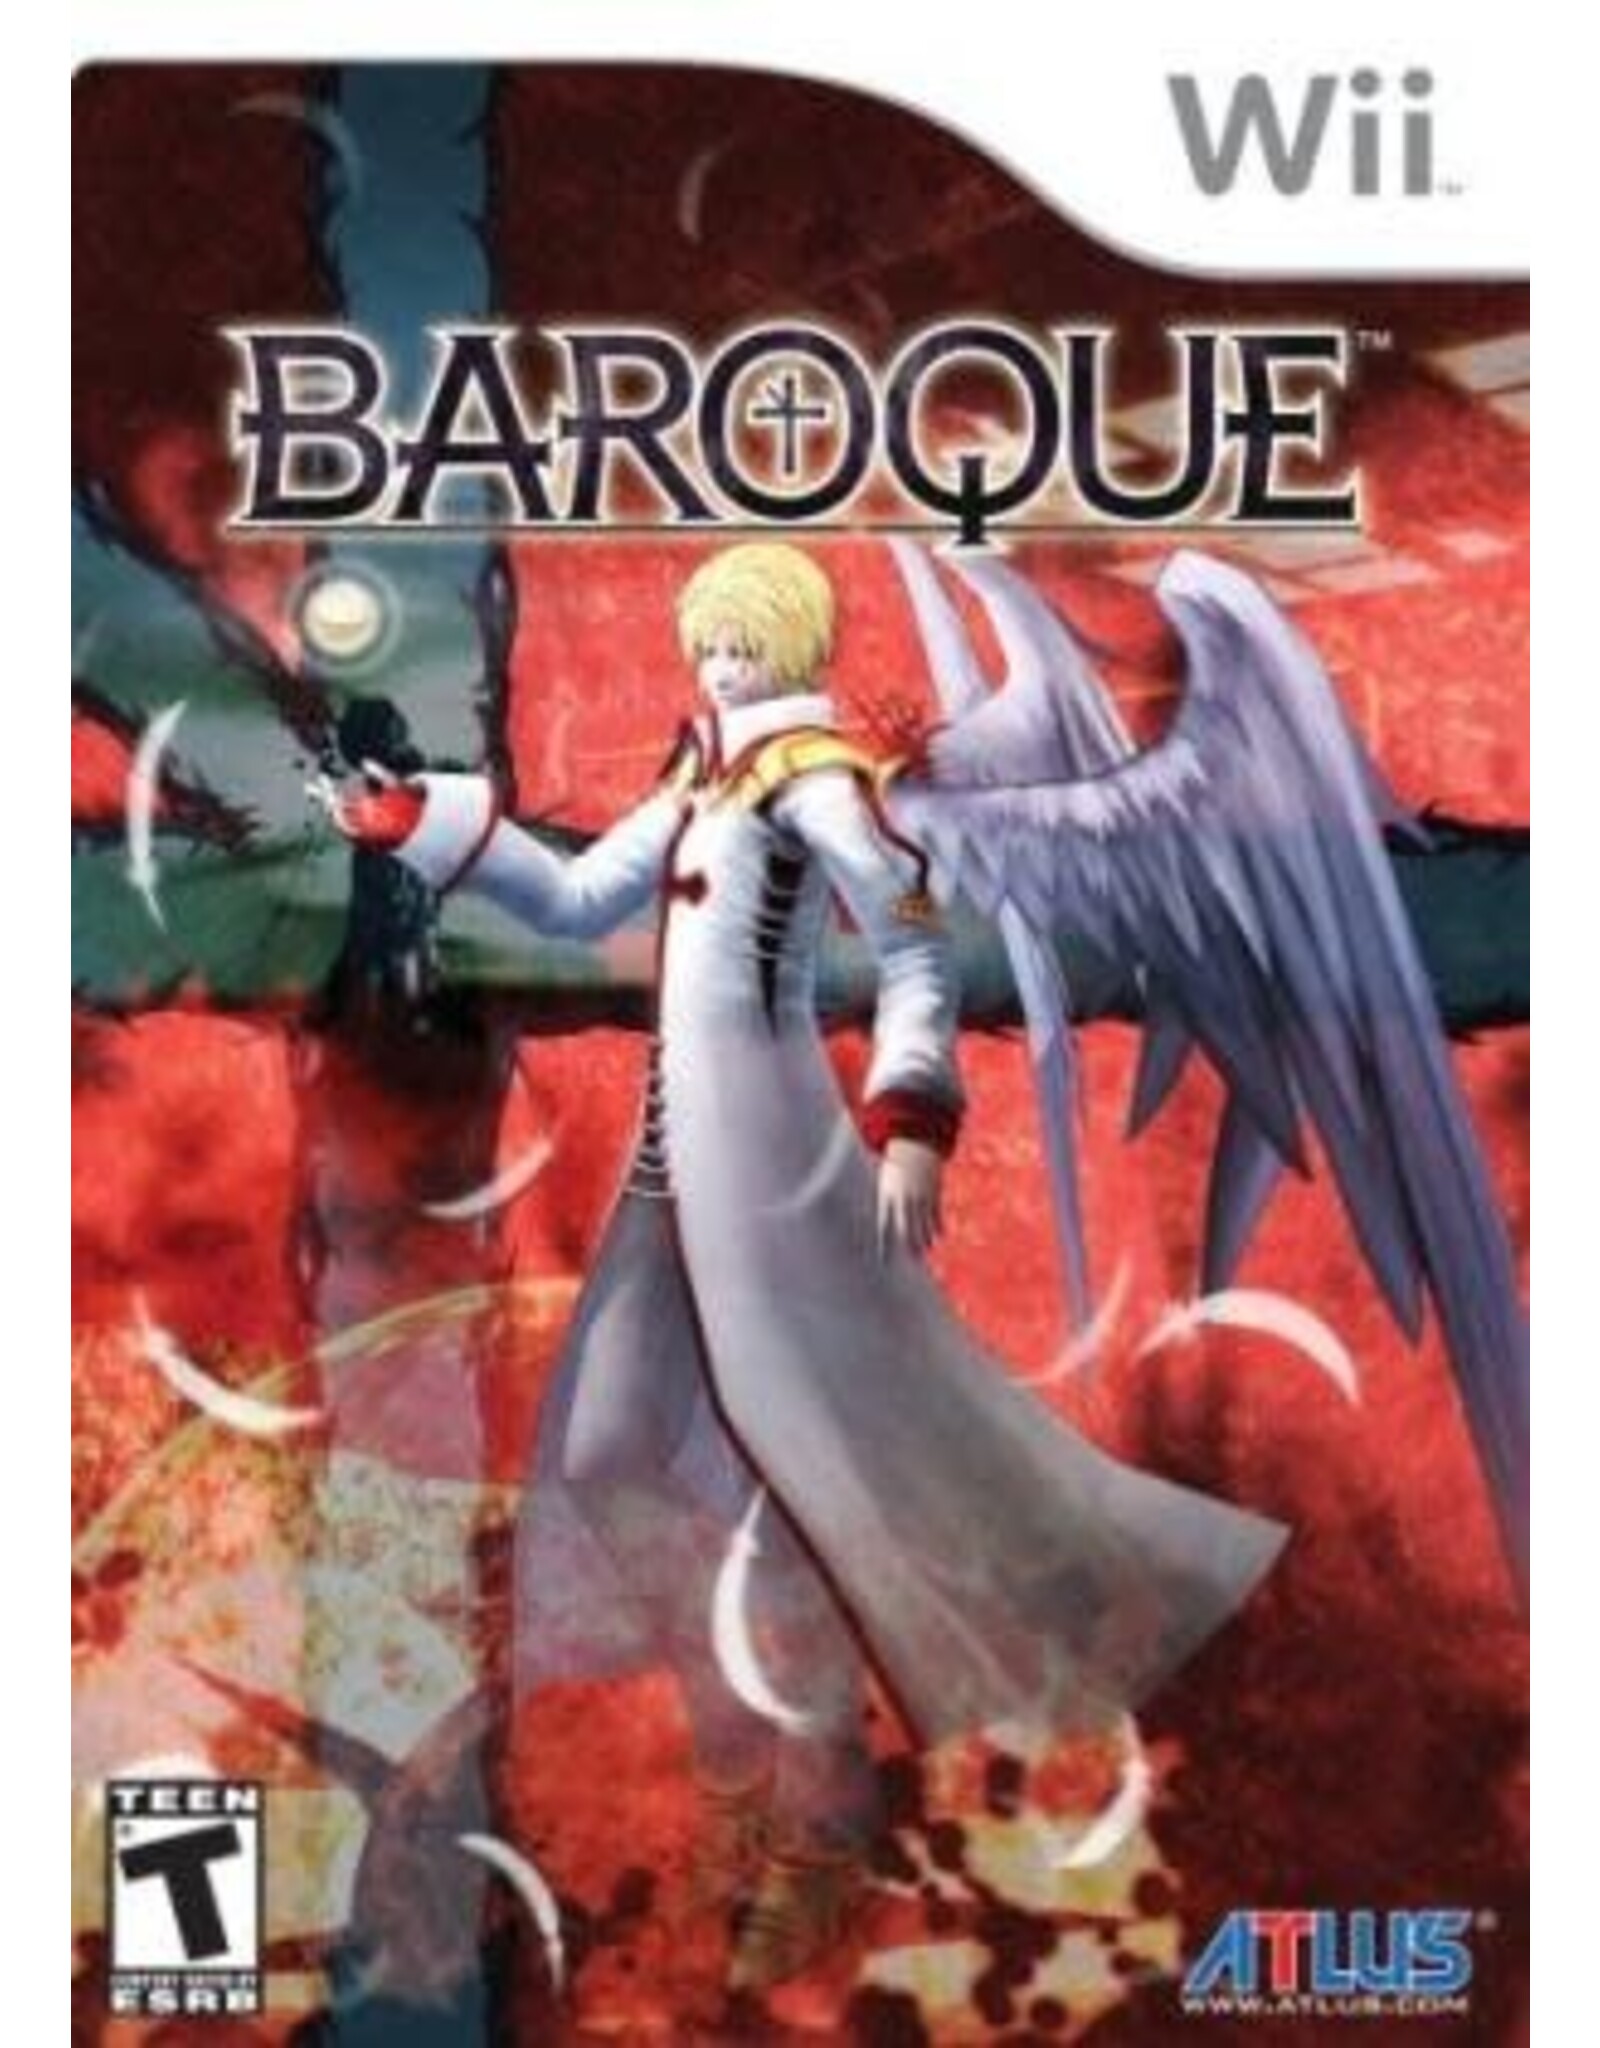 Wii Baroque (CiB, Water Damaged Insert)